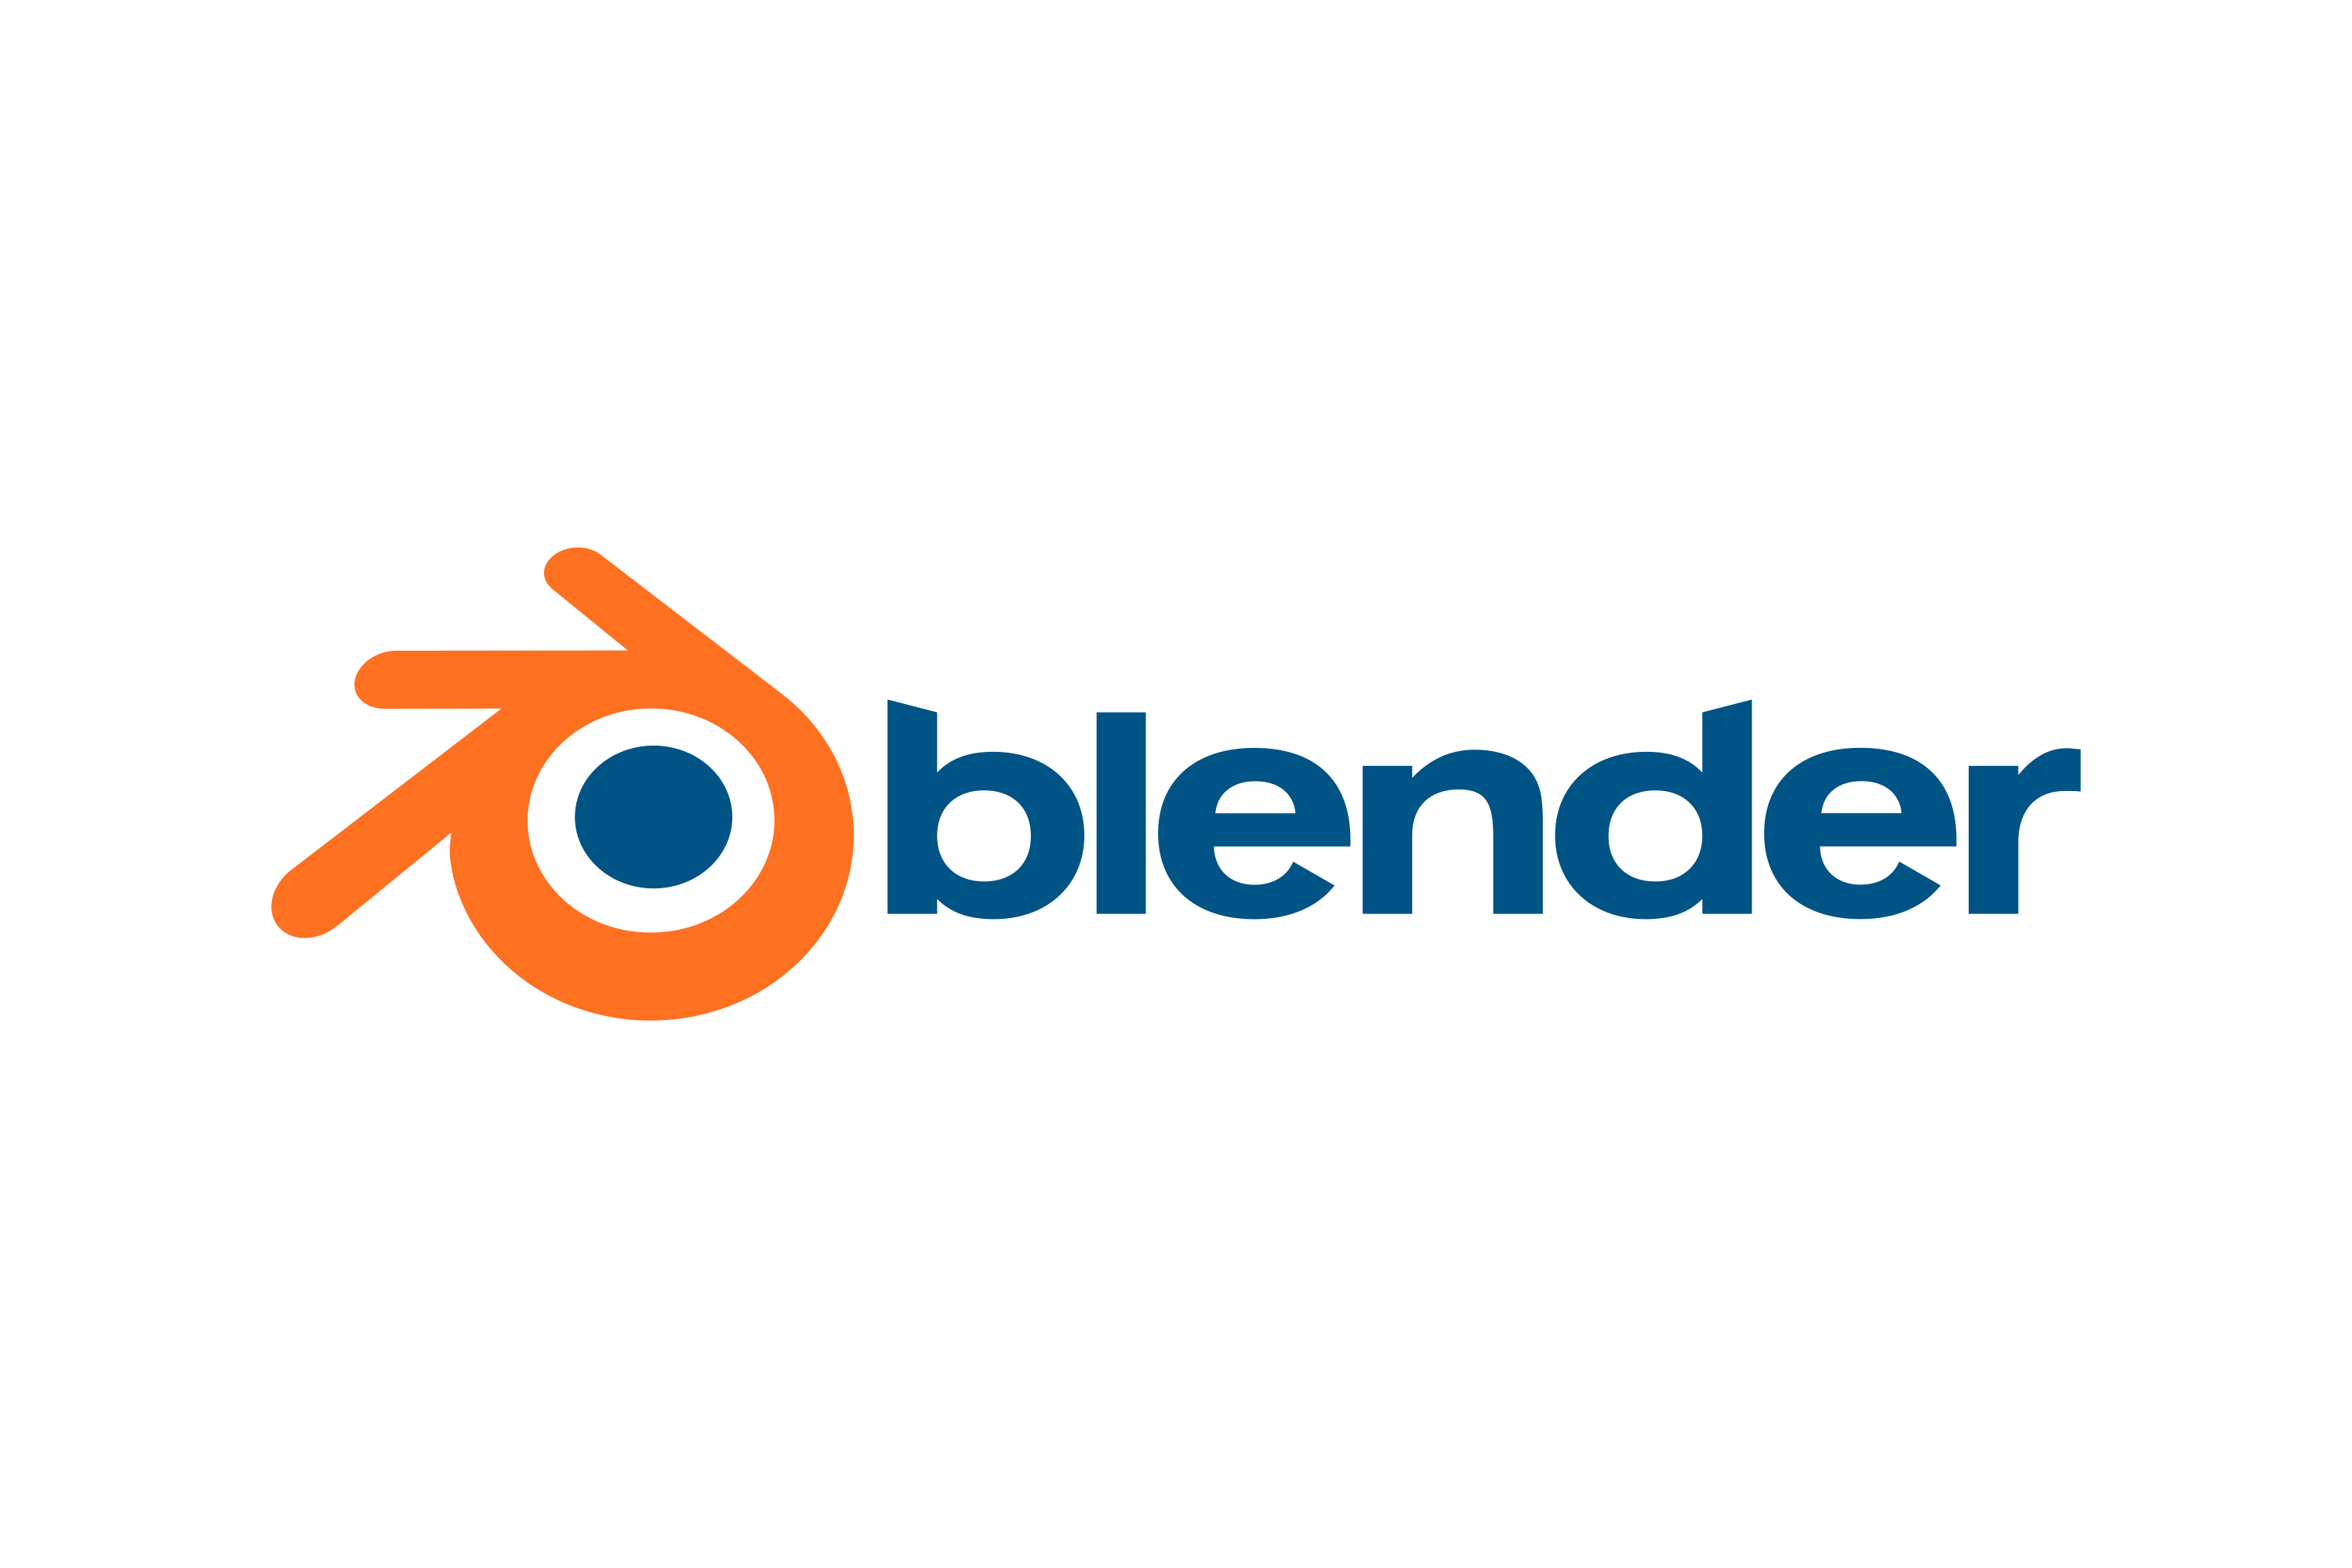 Download Blender Logo in SVG Vector or PNG File Format - Logo.wine